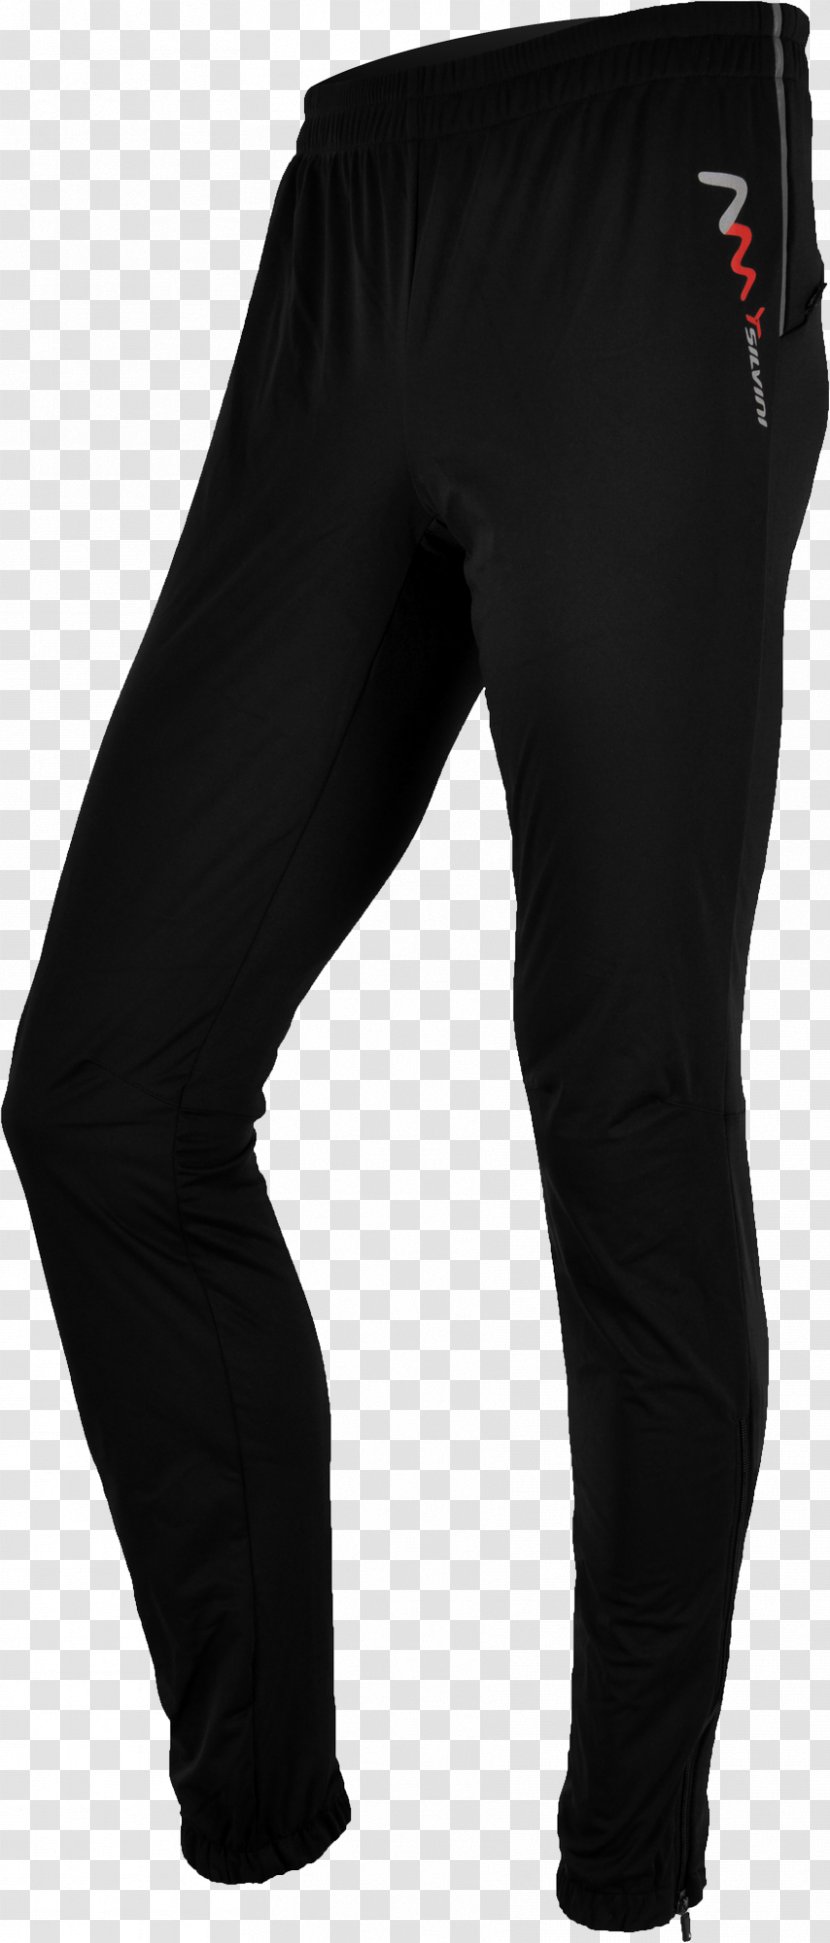 Waist Leggings Jeans Pants Black M - Trousers Transparent PNG